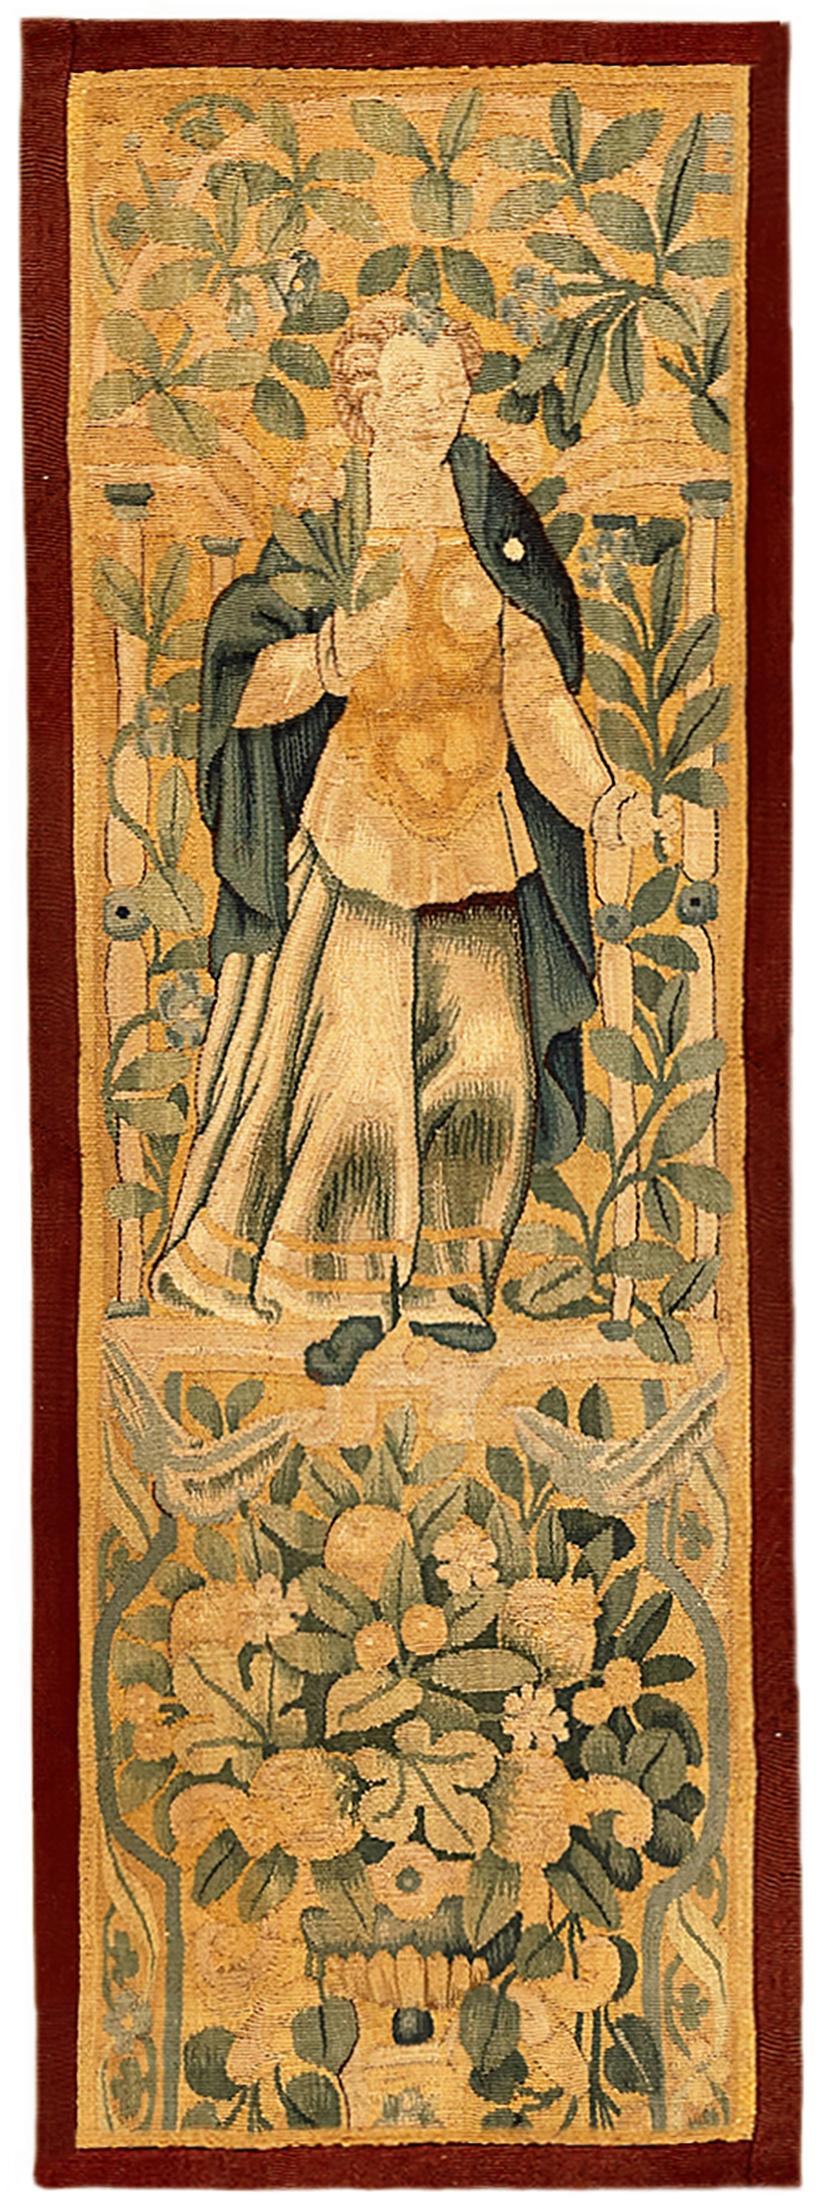 Une paire de panneaux de tapisserie historique flamande du 17ème siècle. Ces panneaux de tapisserie décoratifs orientés verticalement représentent des figures féminines royales en haut, avec des réserves florales élaborées en bas. Les zones